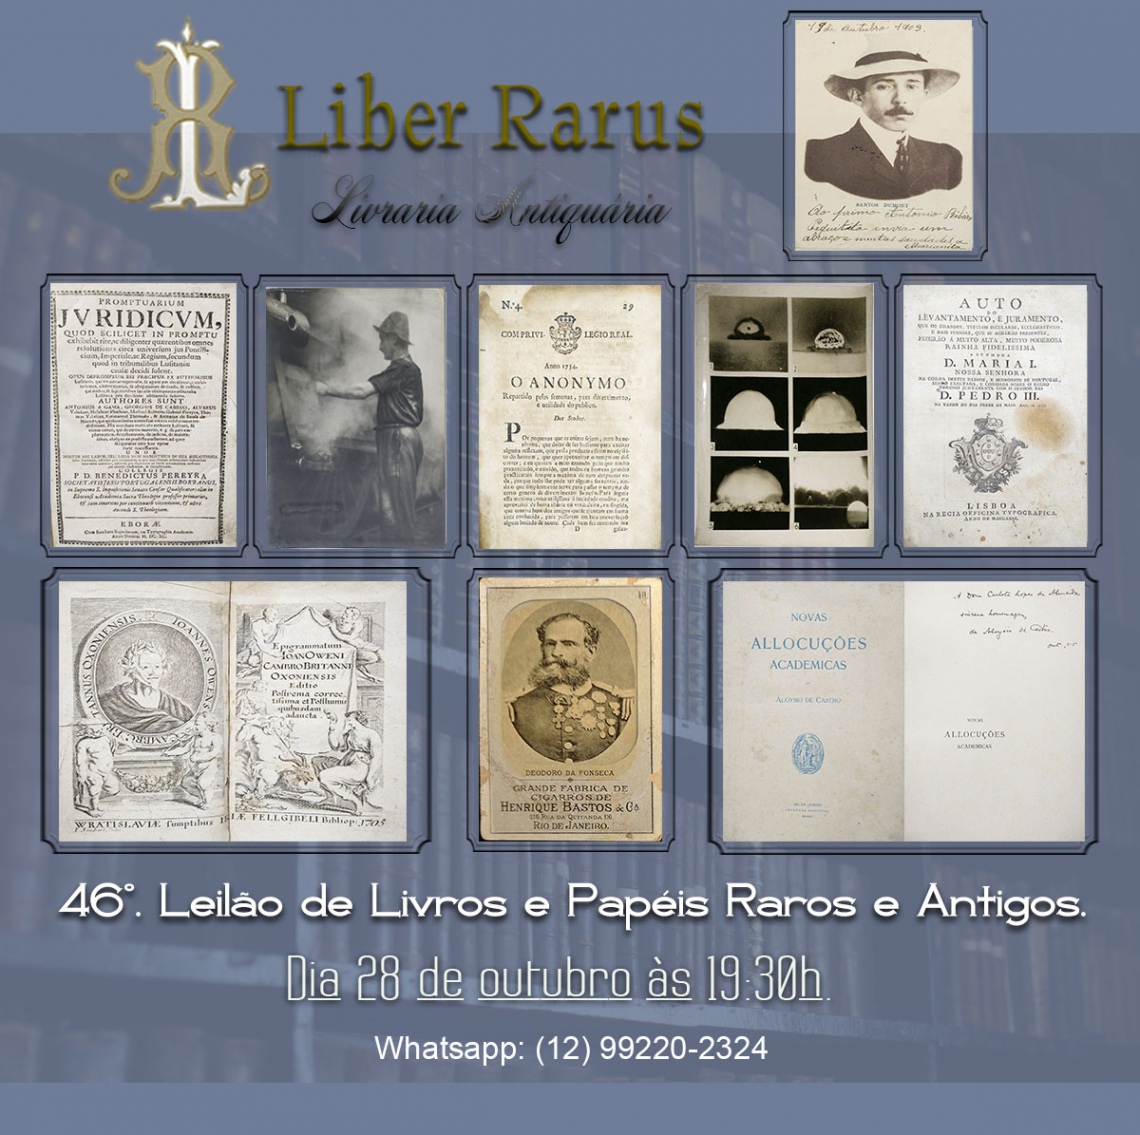 46º Leilão de Livros e Papéis Raros e Antigos - Liber Rarus - 28/10/2022 - 19:30h